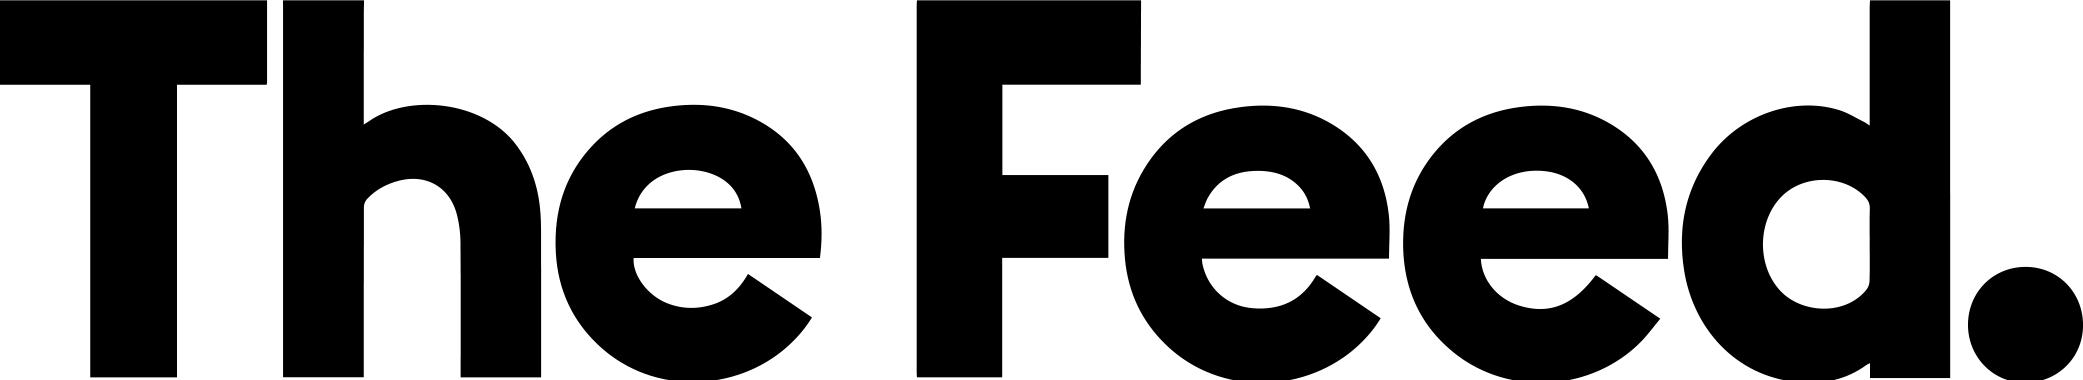 The Feed Logo